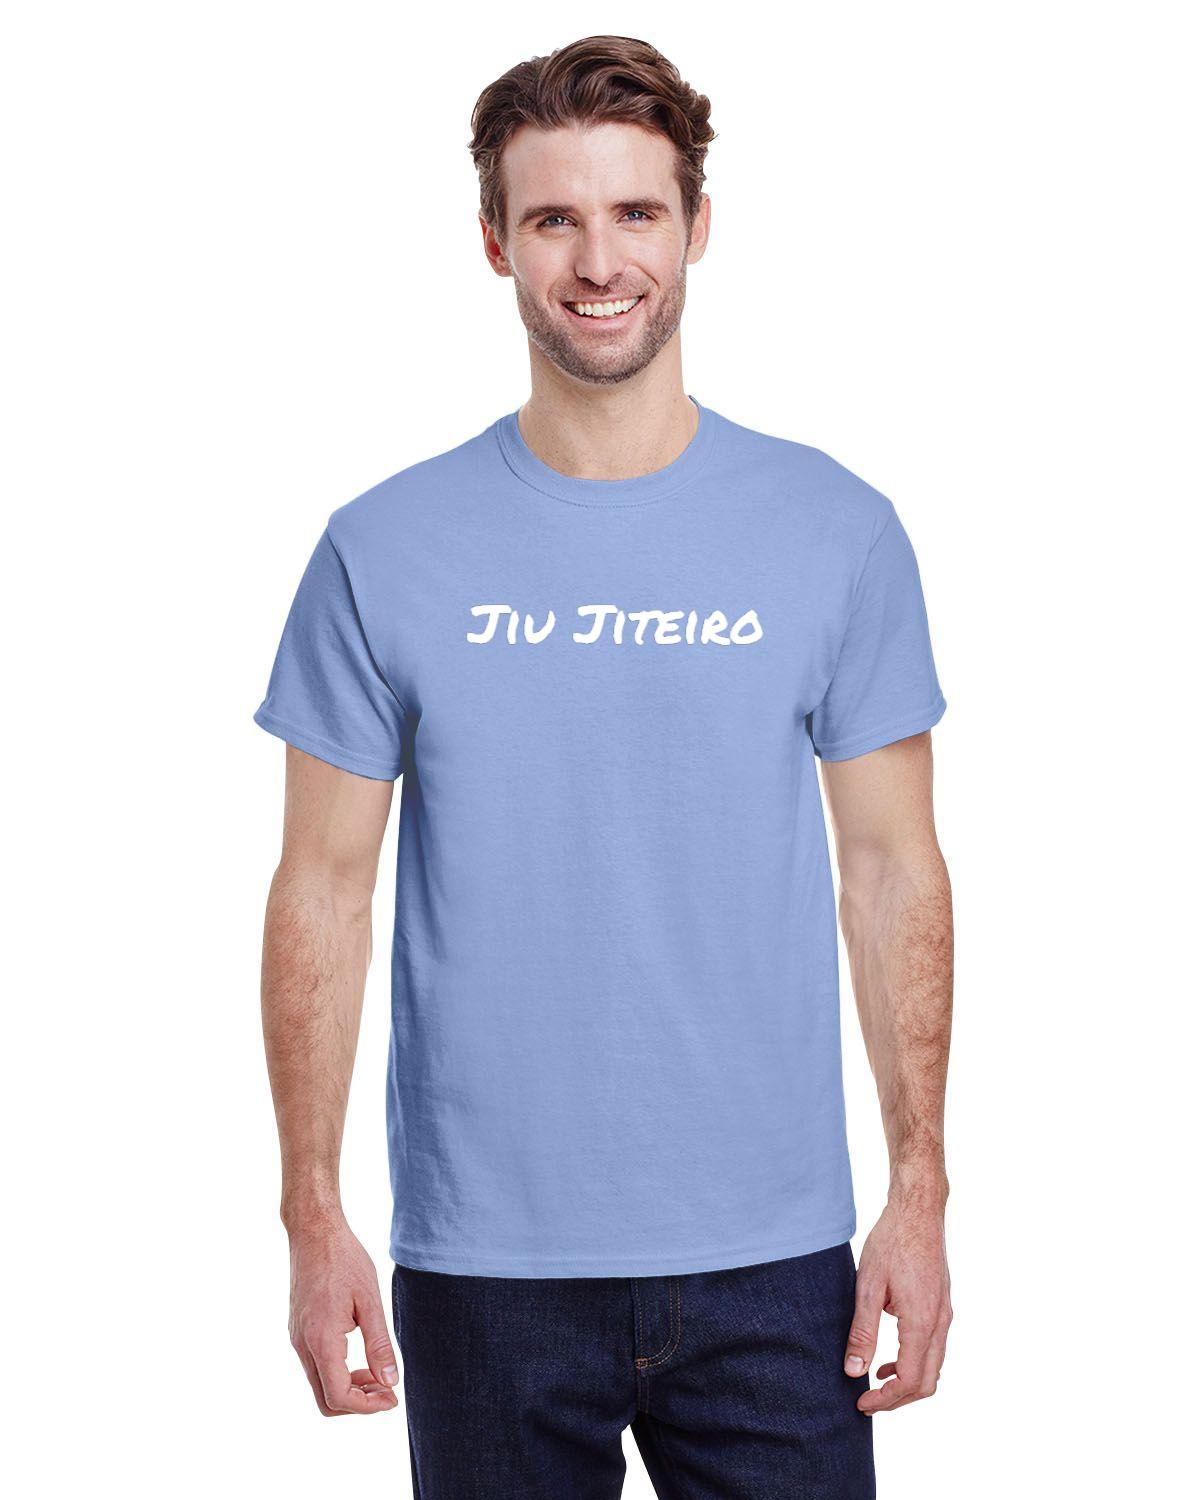 Jiu Jiteiro Mens T-Shirt